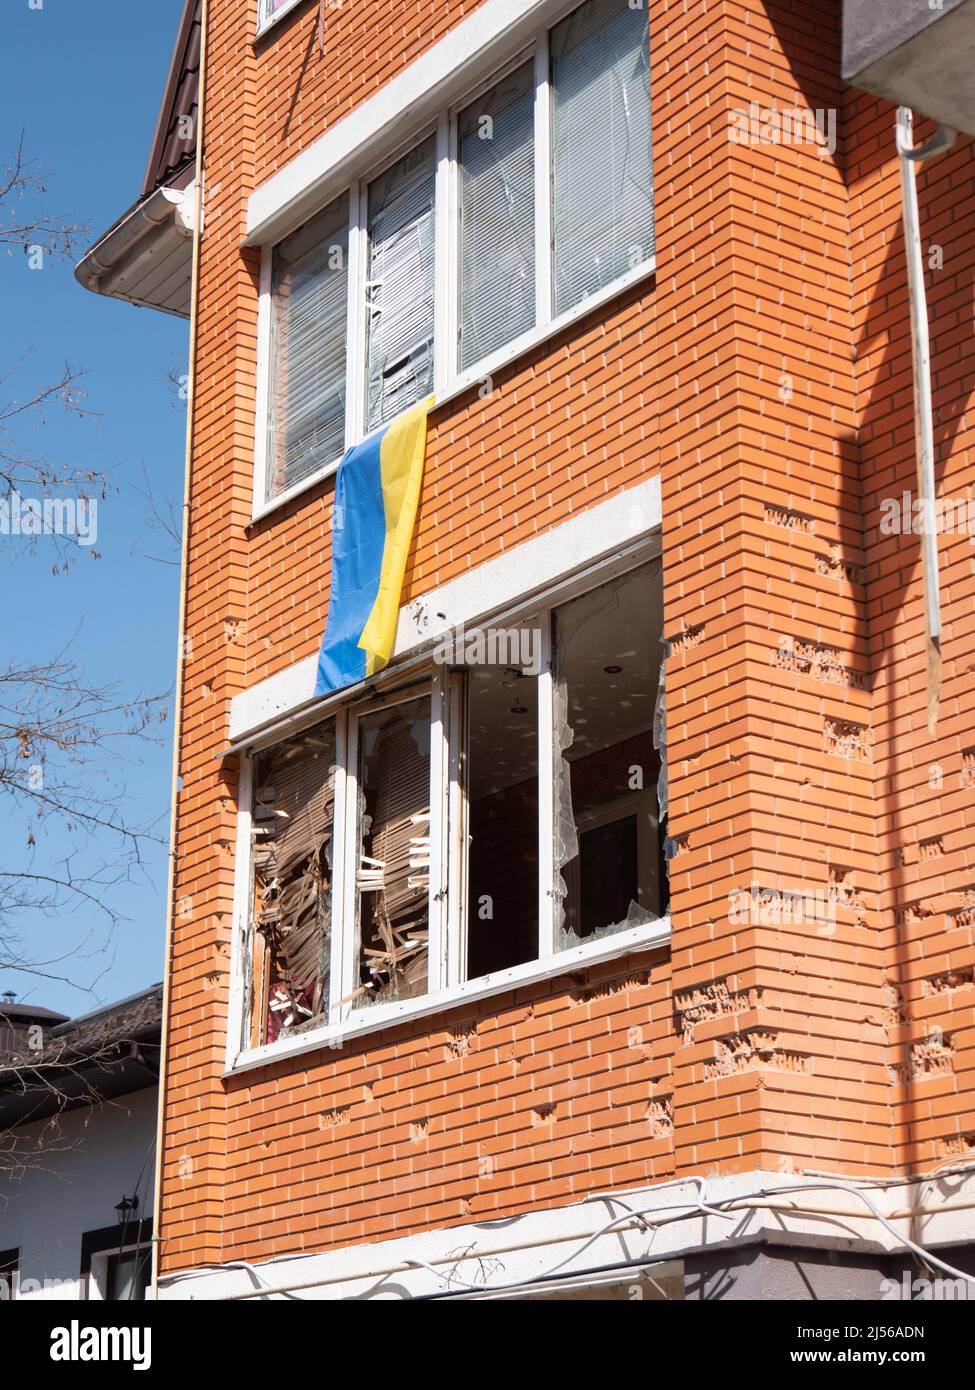 Edificios destruidos después del bombardeo, closeup. La bandera ucraniana cuelga del balcón de una casa con conchas en Ucrania. Bombardear edificios residenciales con minas. Liberó la ciudad ucraniana de los invasores rusos Foto de stock